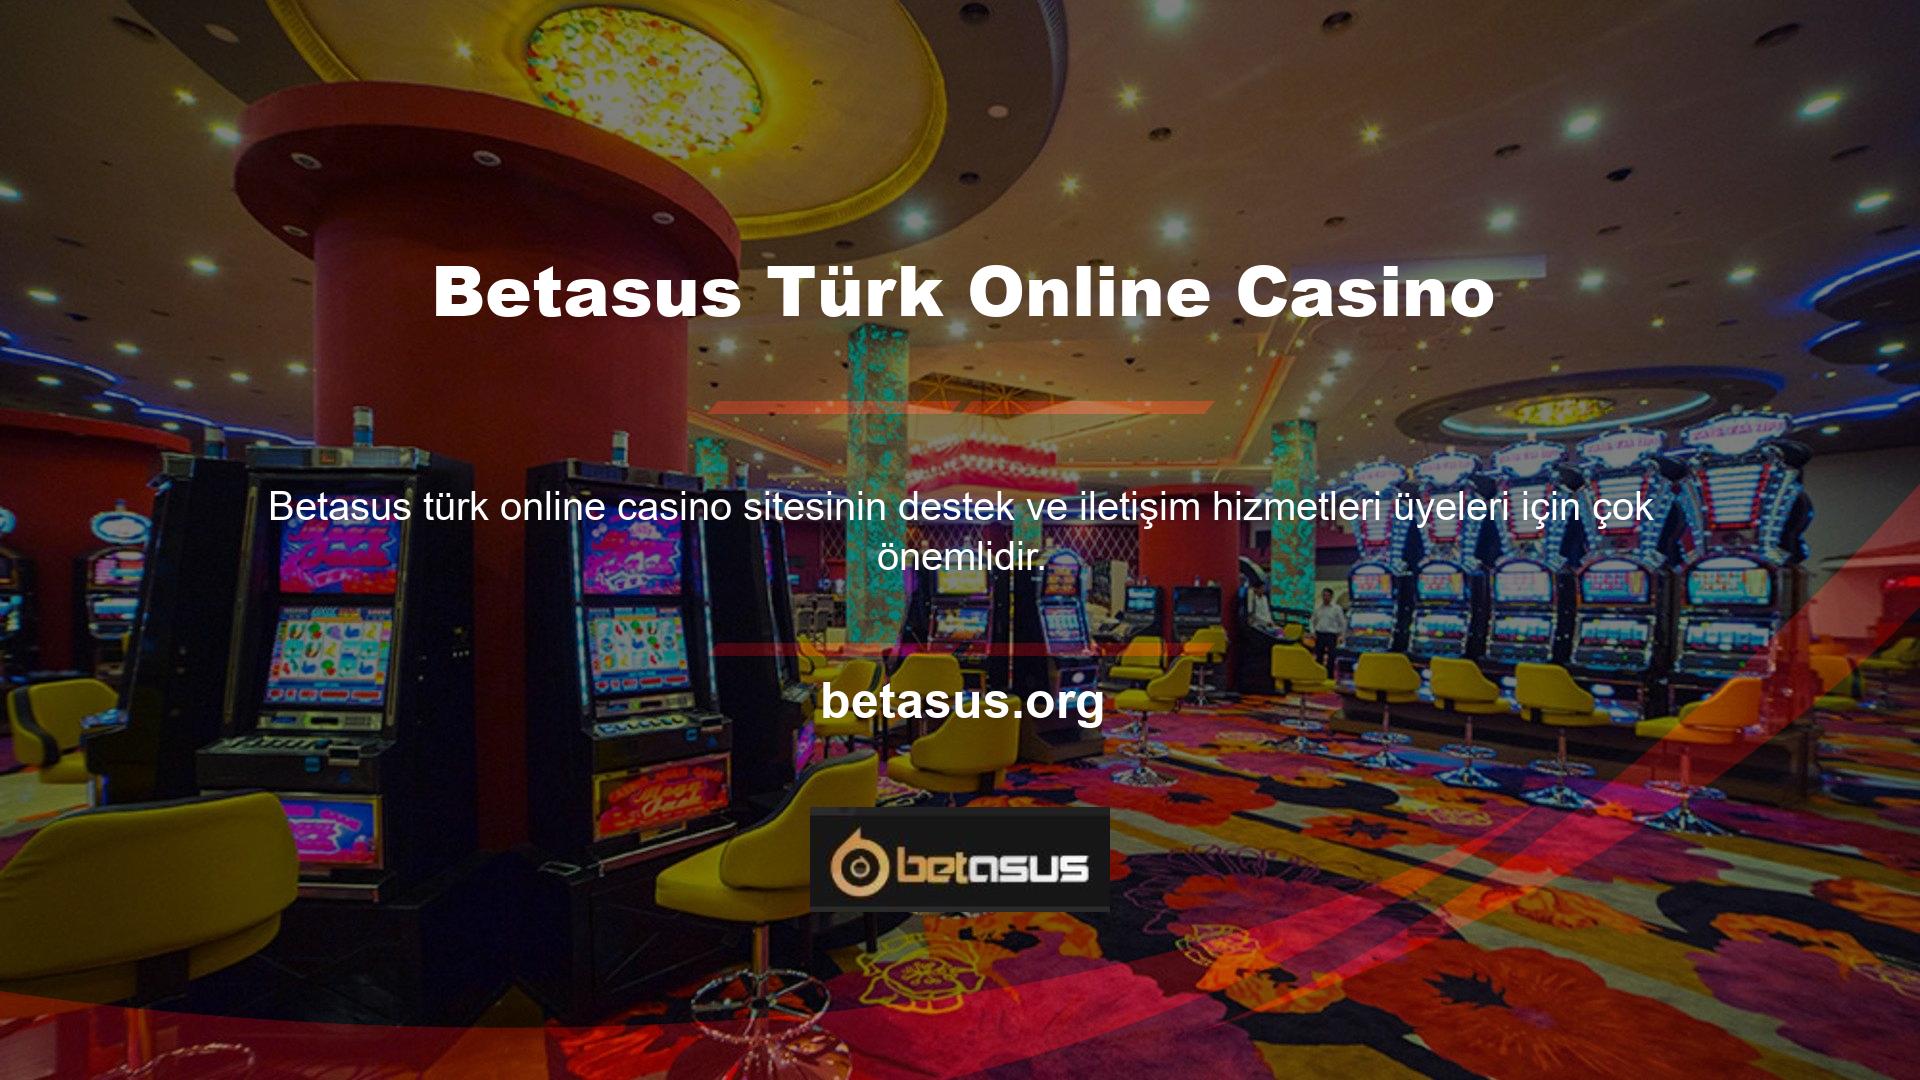 Bu sitelerin ülkemizde şubeleri bulunmadığından oyuncular ve casino oyuncuları profesyonel bir şekilde hizmet vermek için bu sitelere güvenmektedir